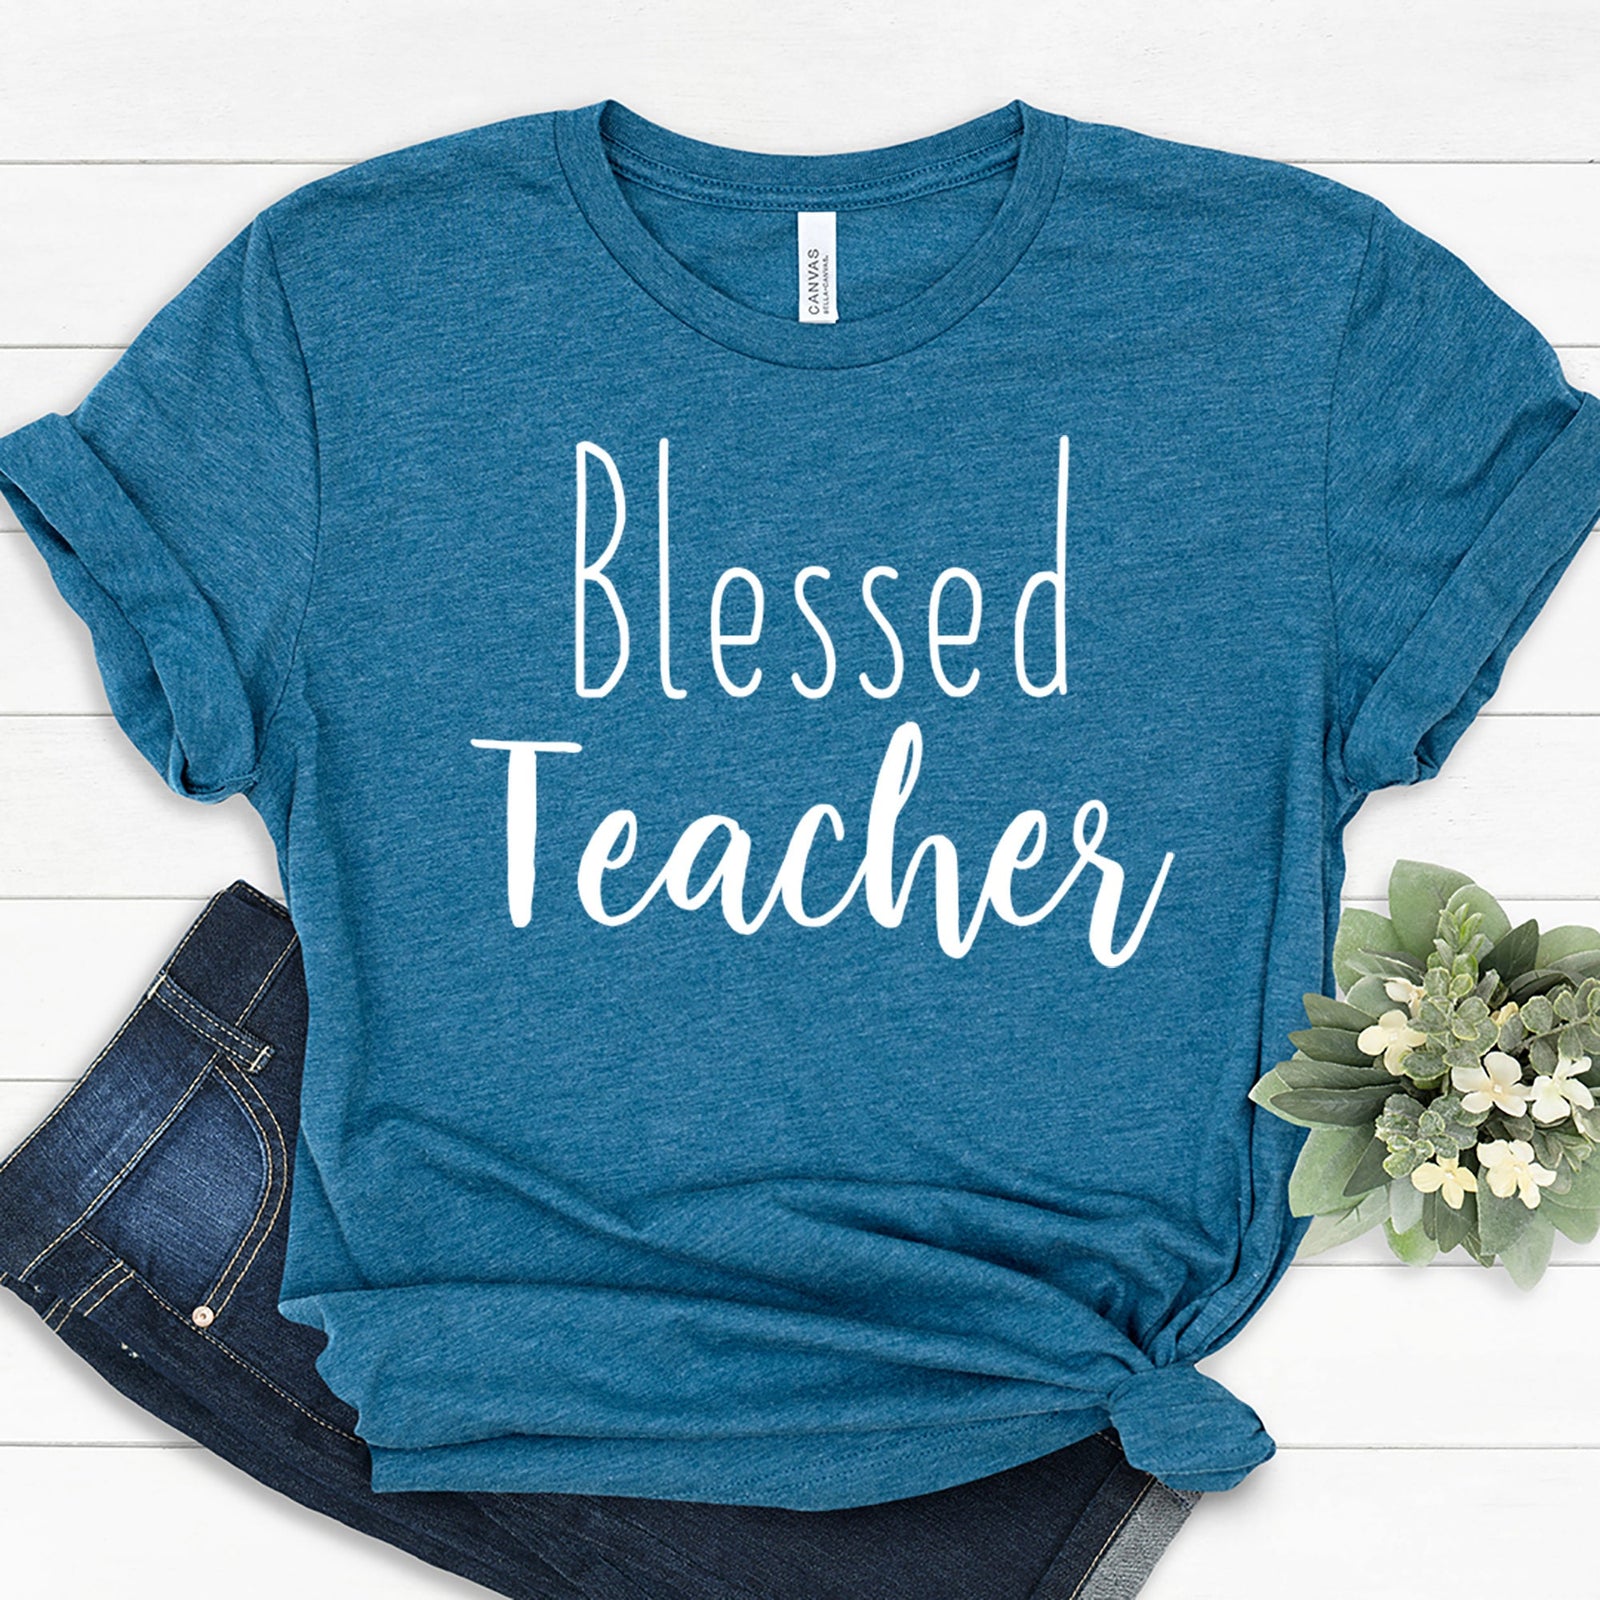 Blessed Teacher T Shirt - Teacher Shirts